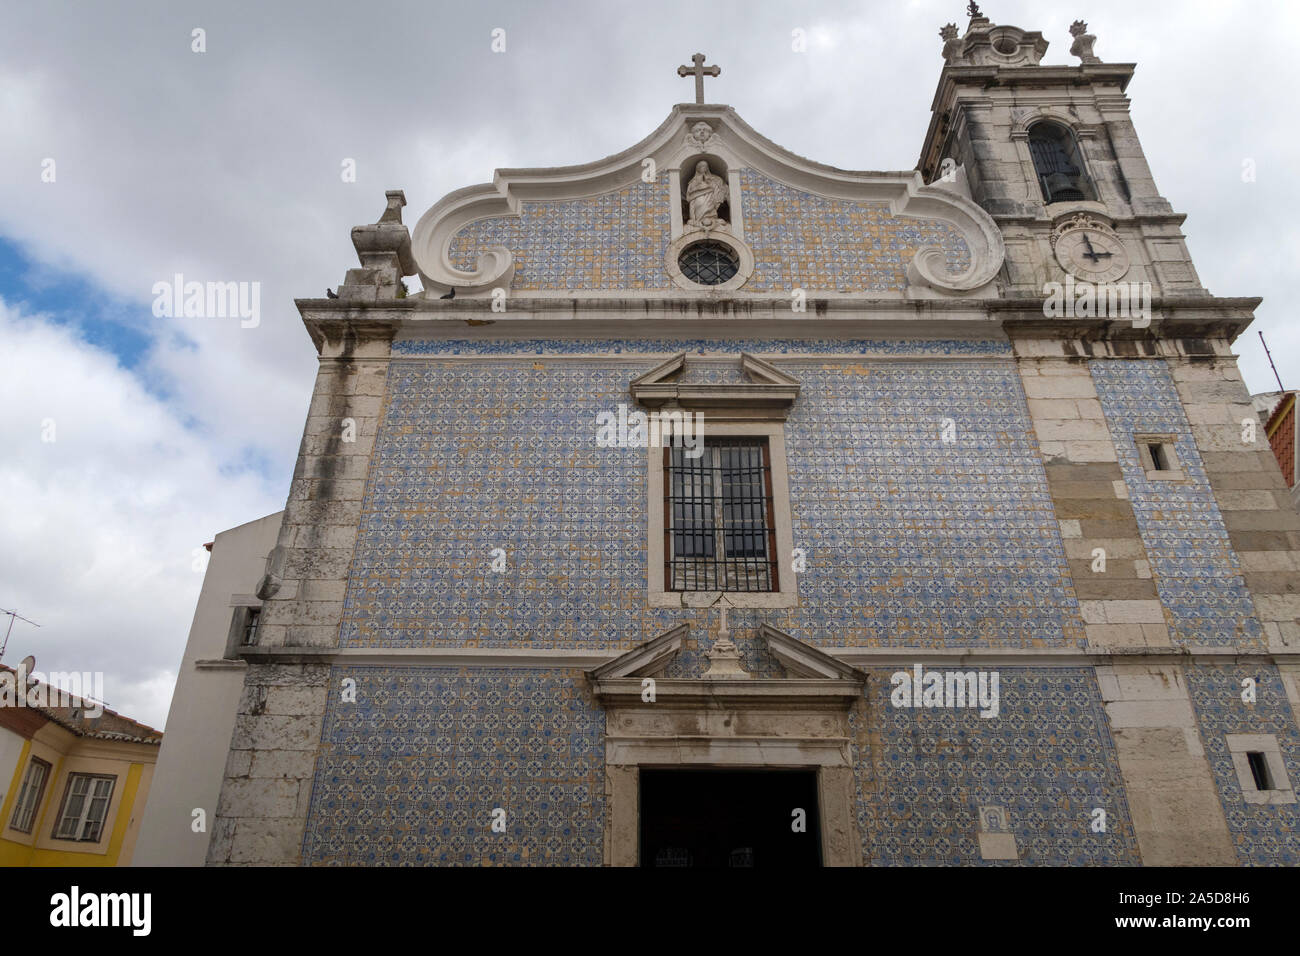 Igreja de Nossa senhora da Conceição church facade with traditional portuguese blue tiles azulejos, Seixal, Portugal, Europe Stock Photo